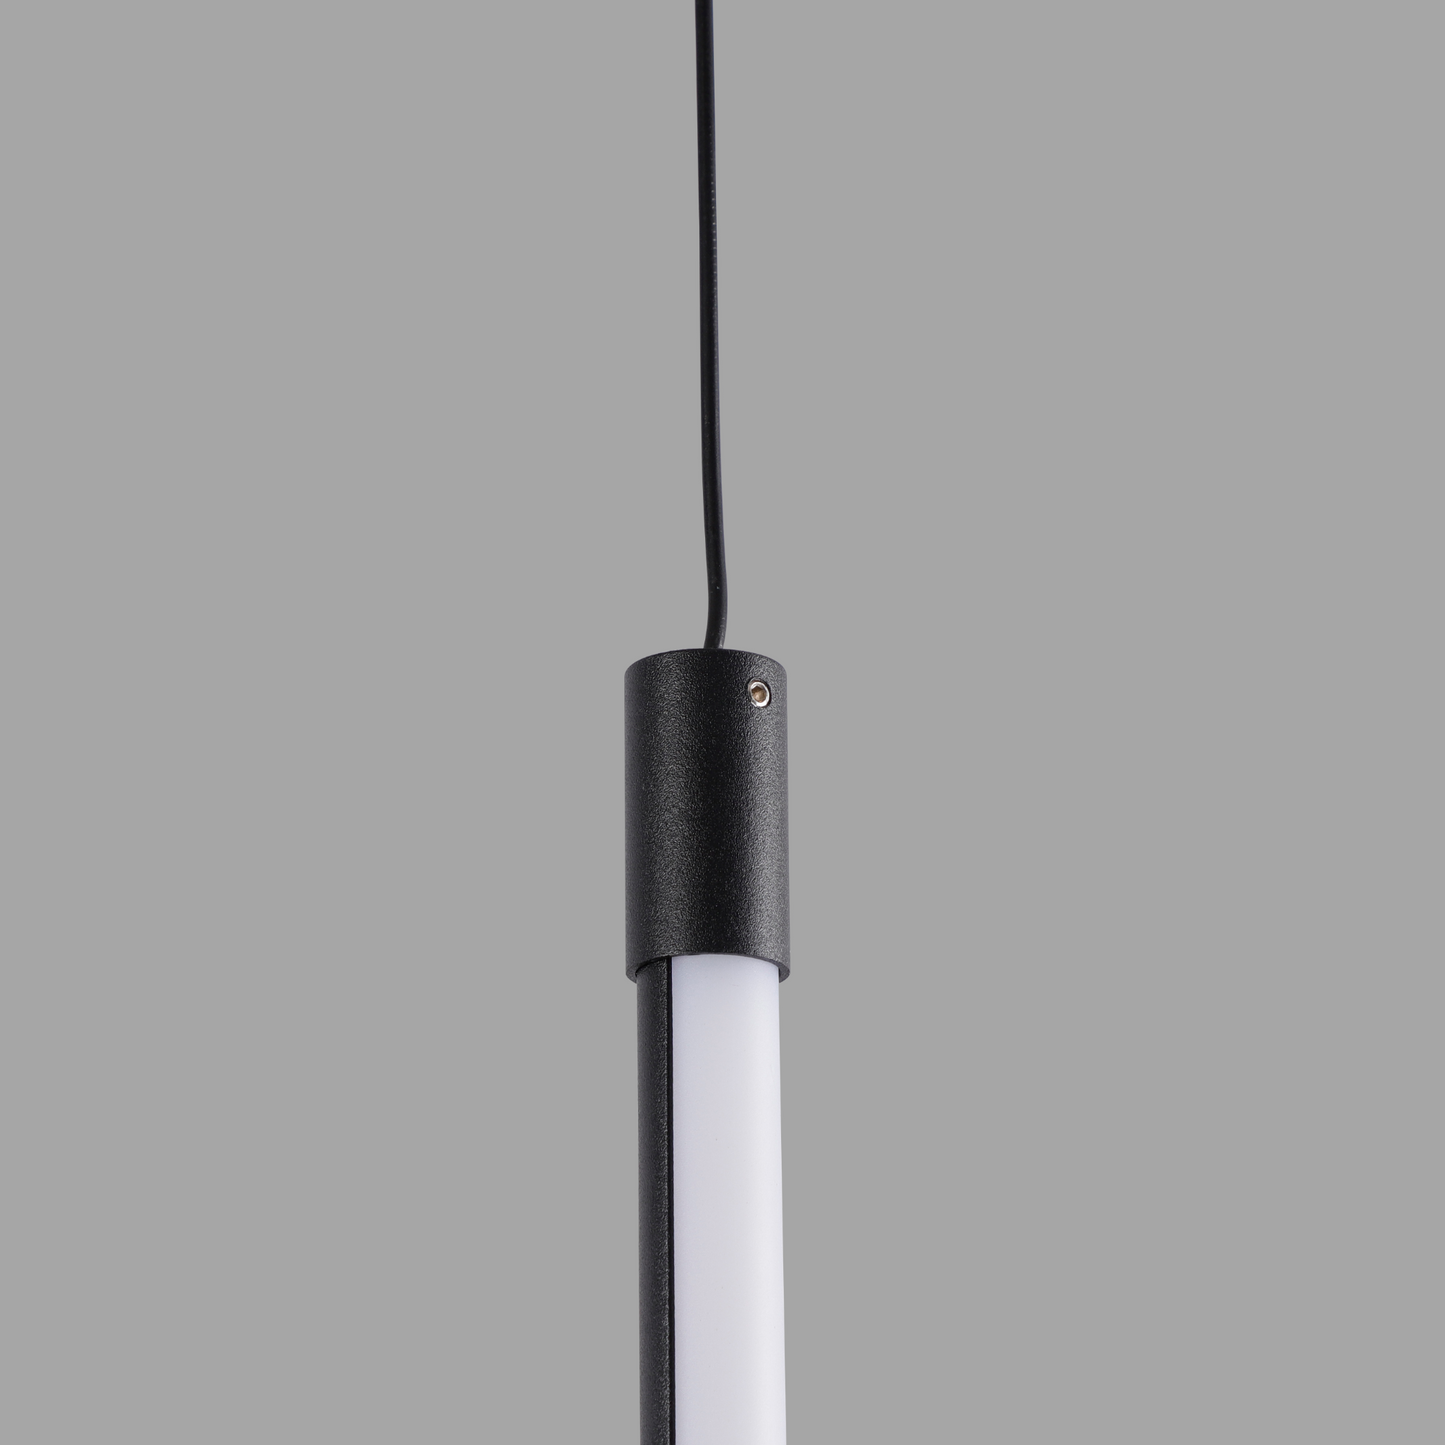 Lampada Sospesa:1313 a Filo minimalista con illuminazione a LED 180 gradi e atmosfera sobria.